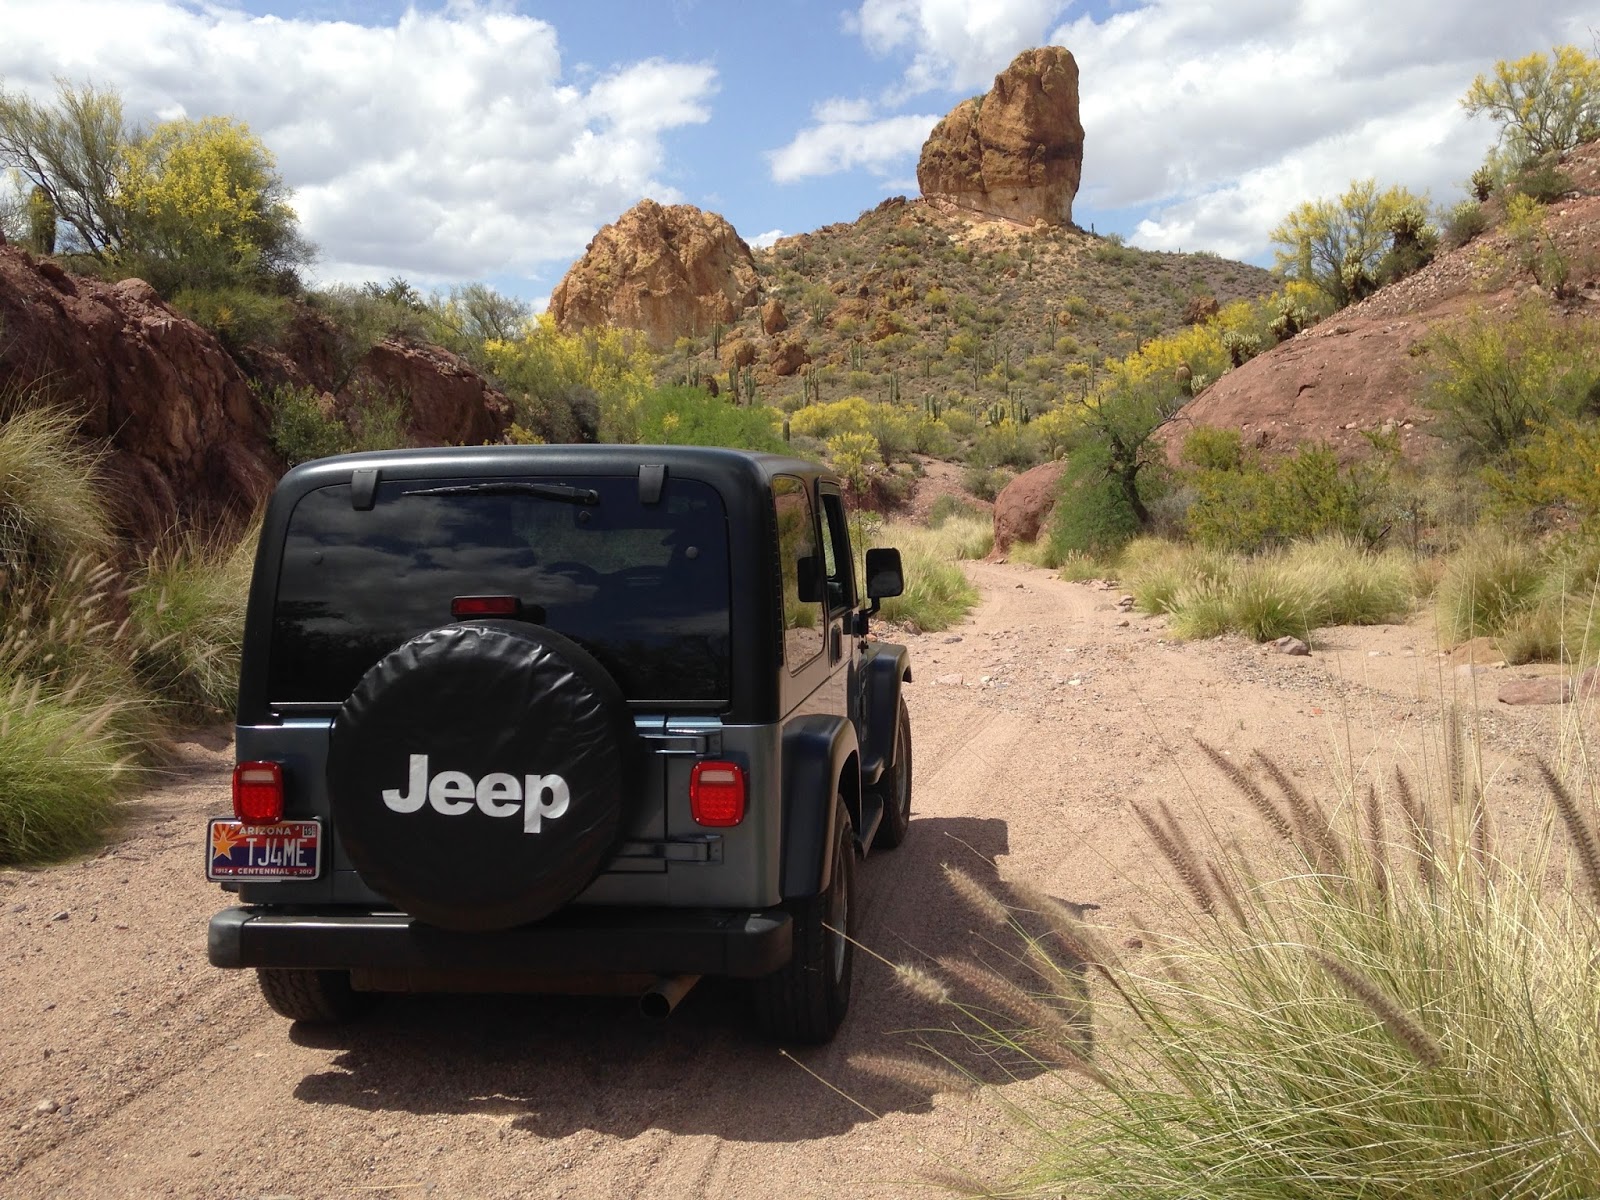 Canyon creek jeep trail #3